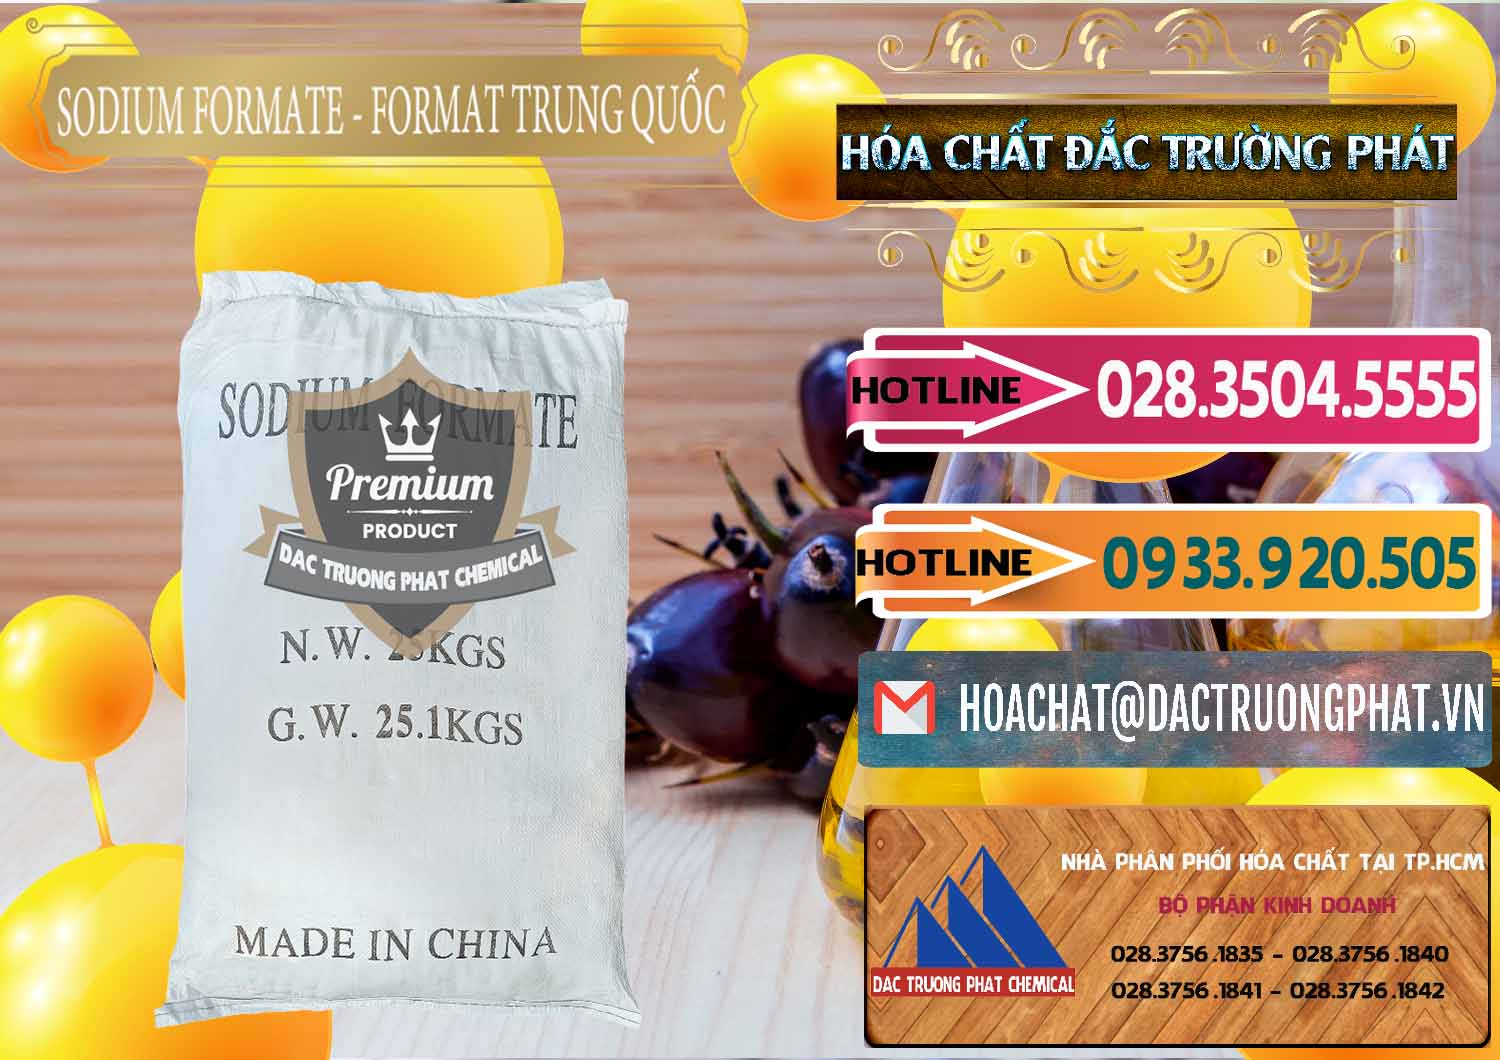 Đơn vị chuyên bán & cung cấp Sodium Formate - Natri Format Trung Quốc China - 0142 - Đơn vị kinh doanh và phân phối hóa chất tại TP.HCM - dactruongphat.vn